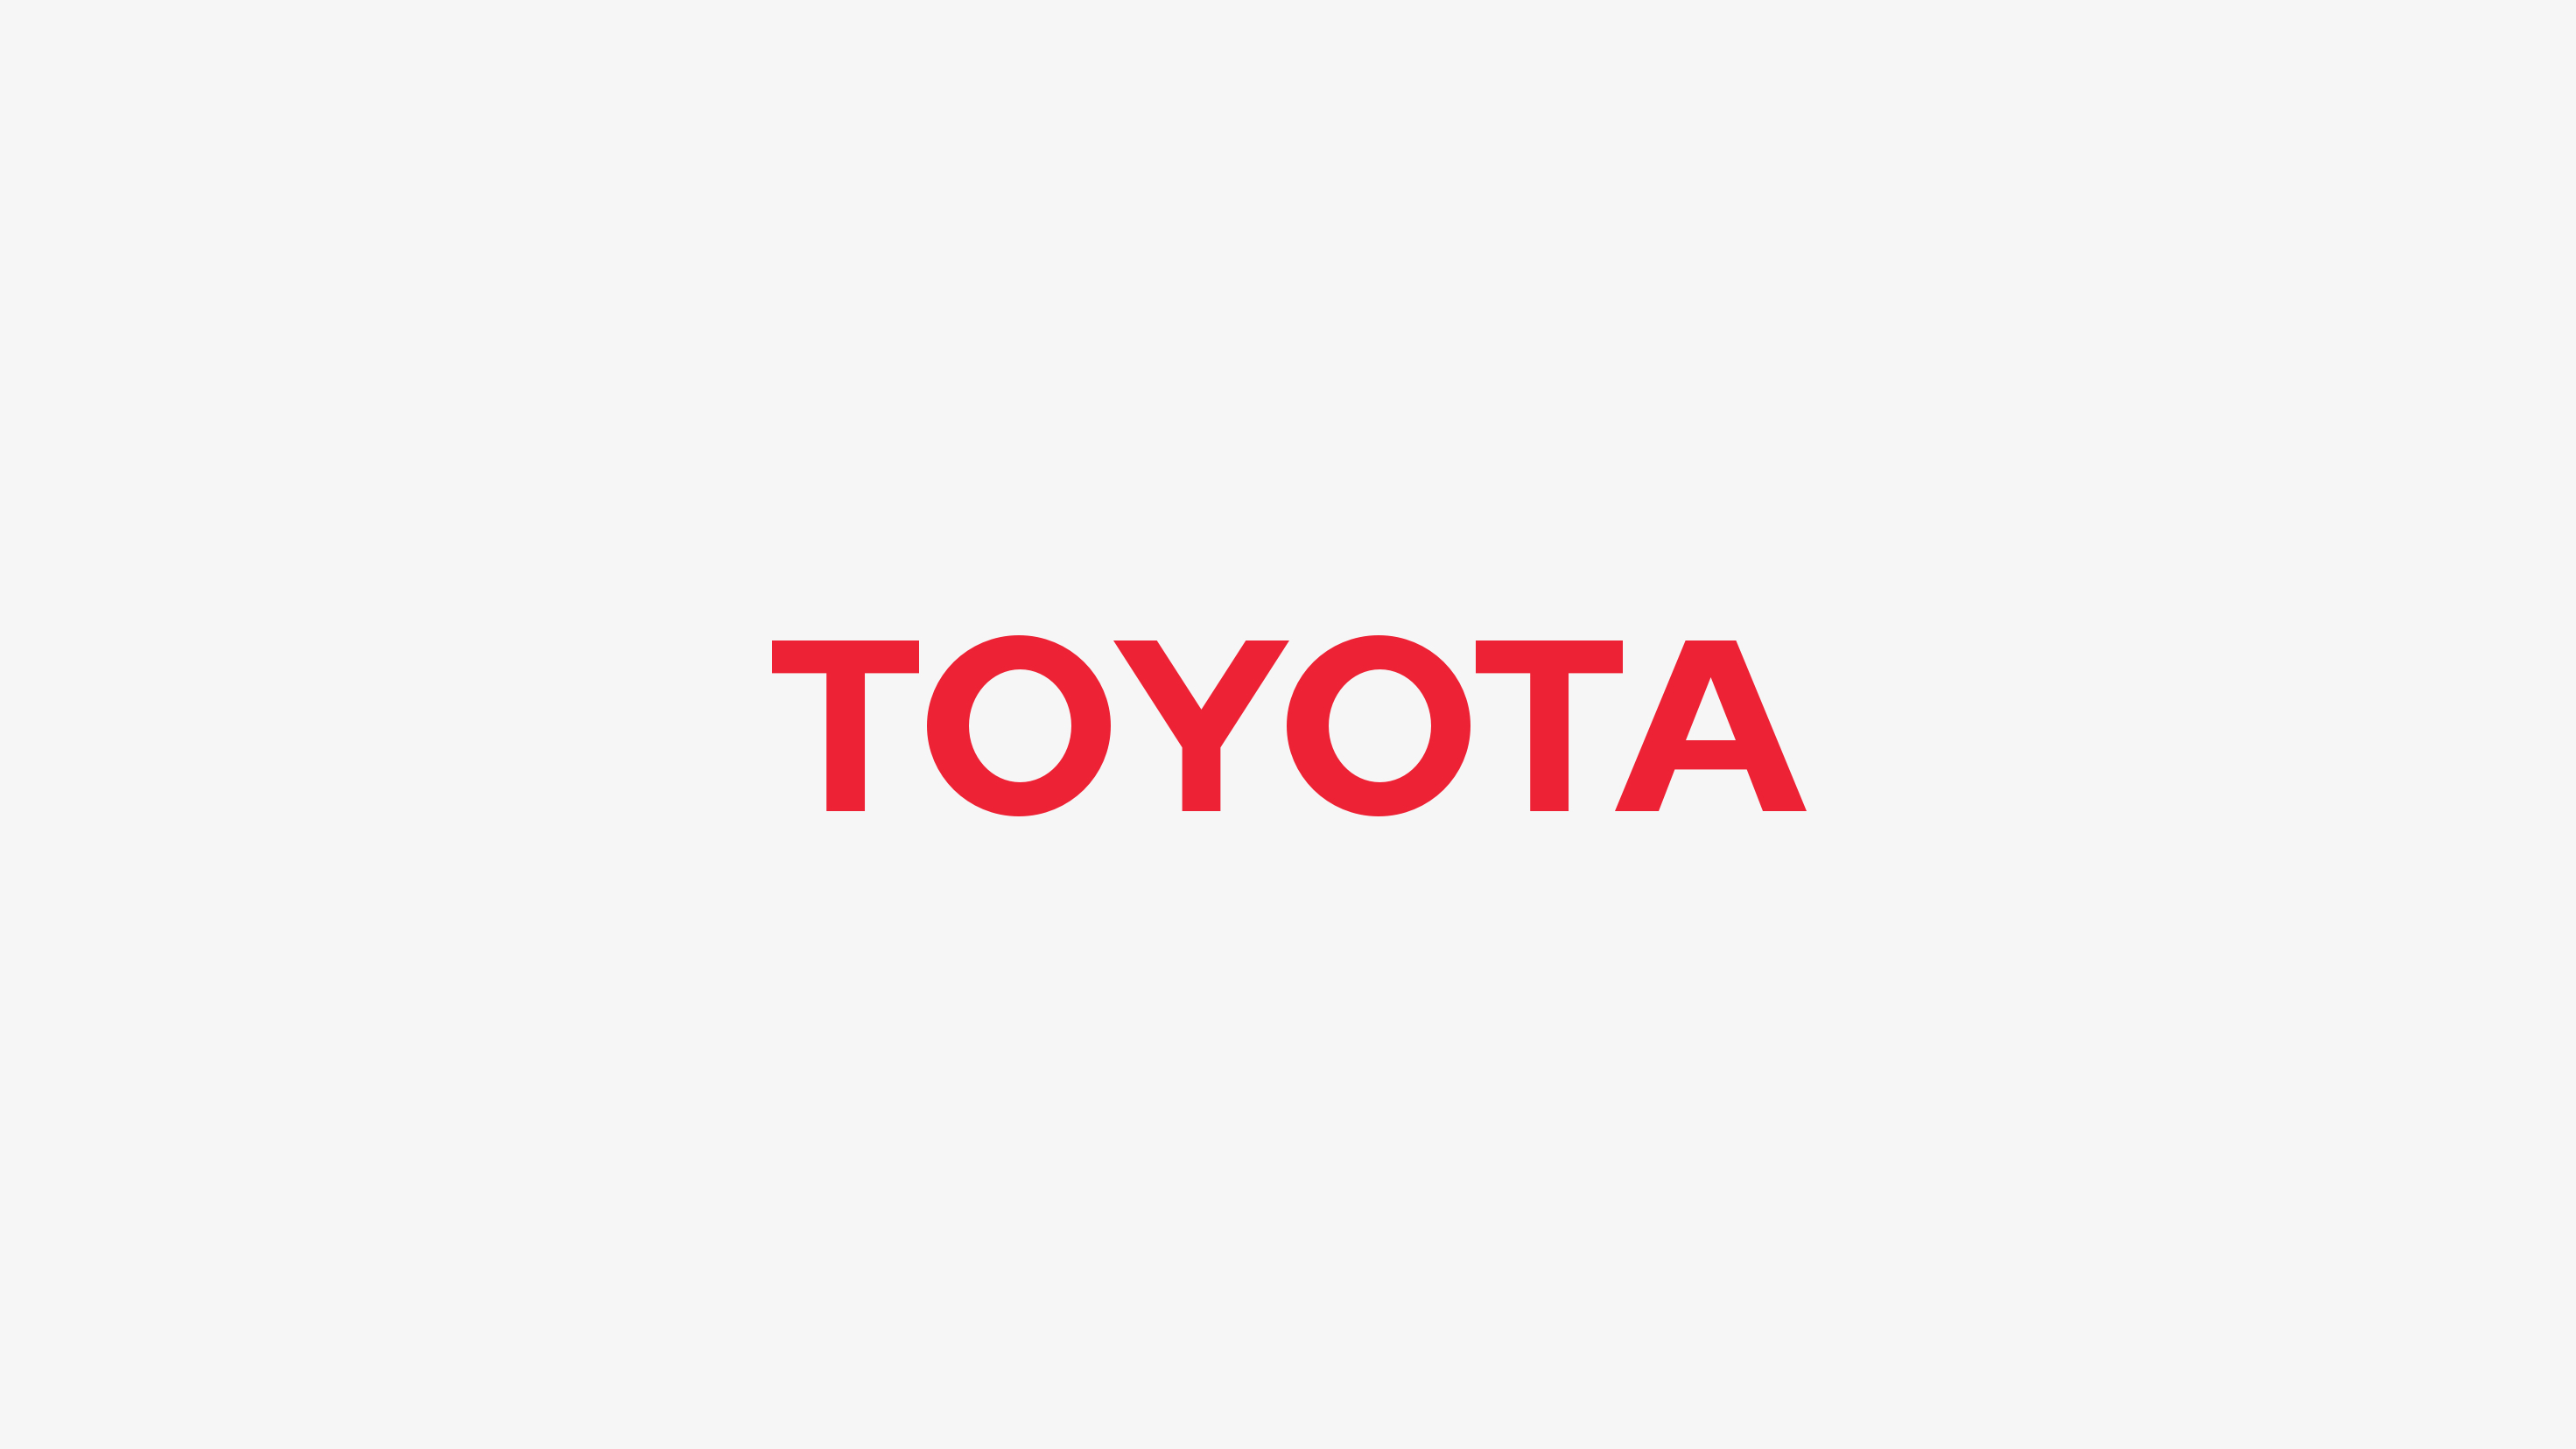 Toyota Scientists Make Breakthrough on Safer, Smarter Batteries